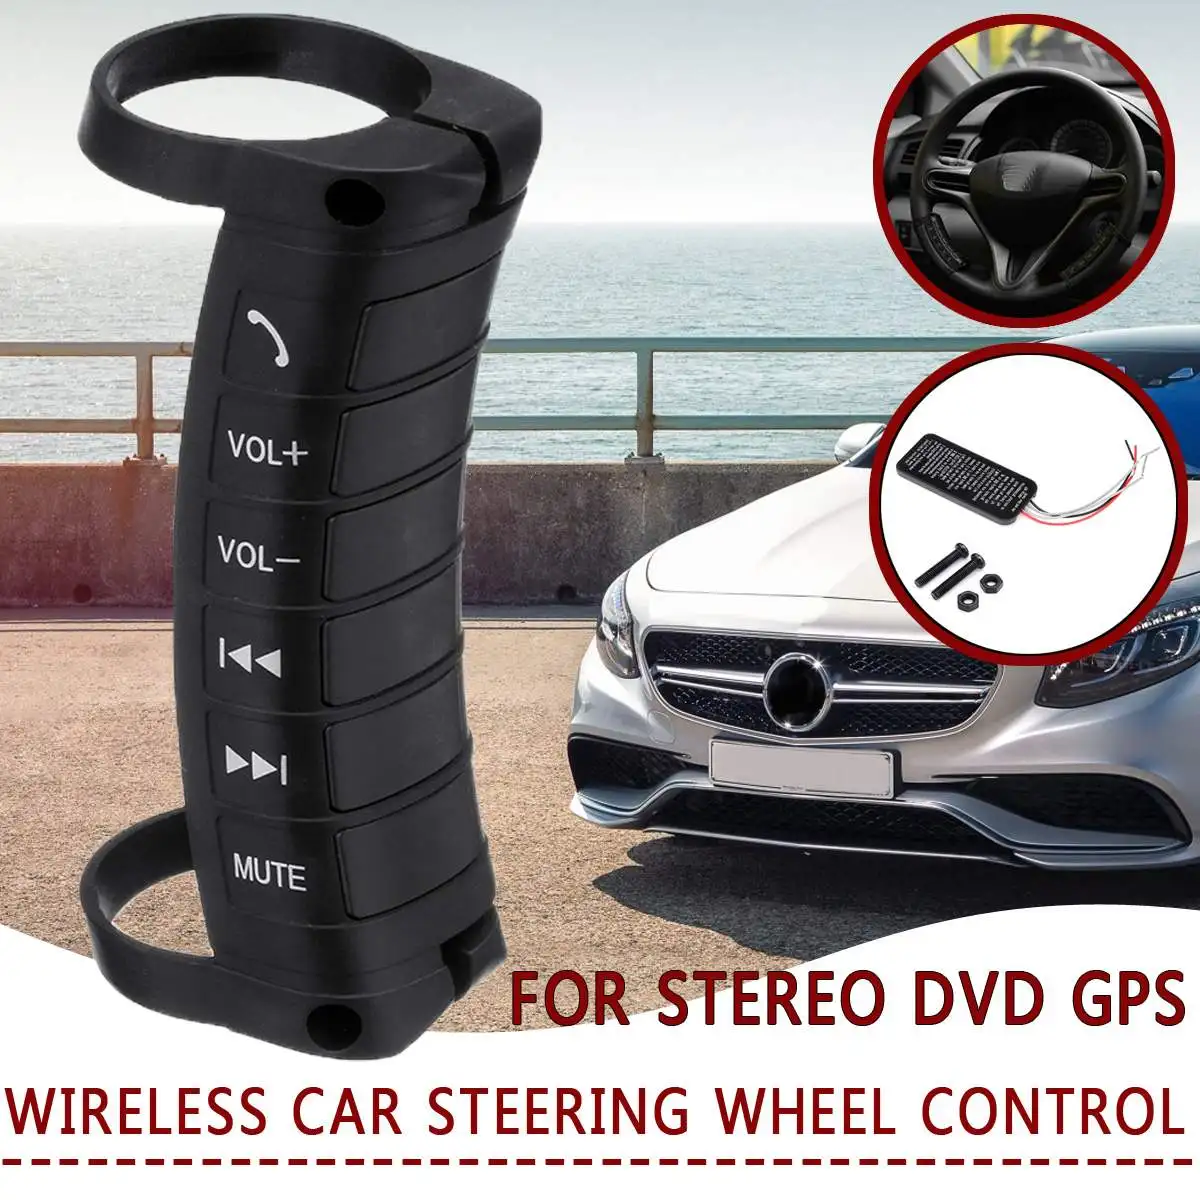 Универсальный беспроводной Автомобильный руль кнопка дистанционного управления для стерео DVD gps многофункциональные автомобильные модифицированные аксессуары Стайлинг